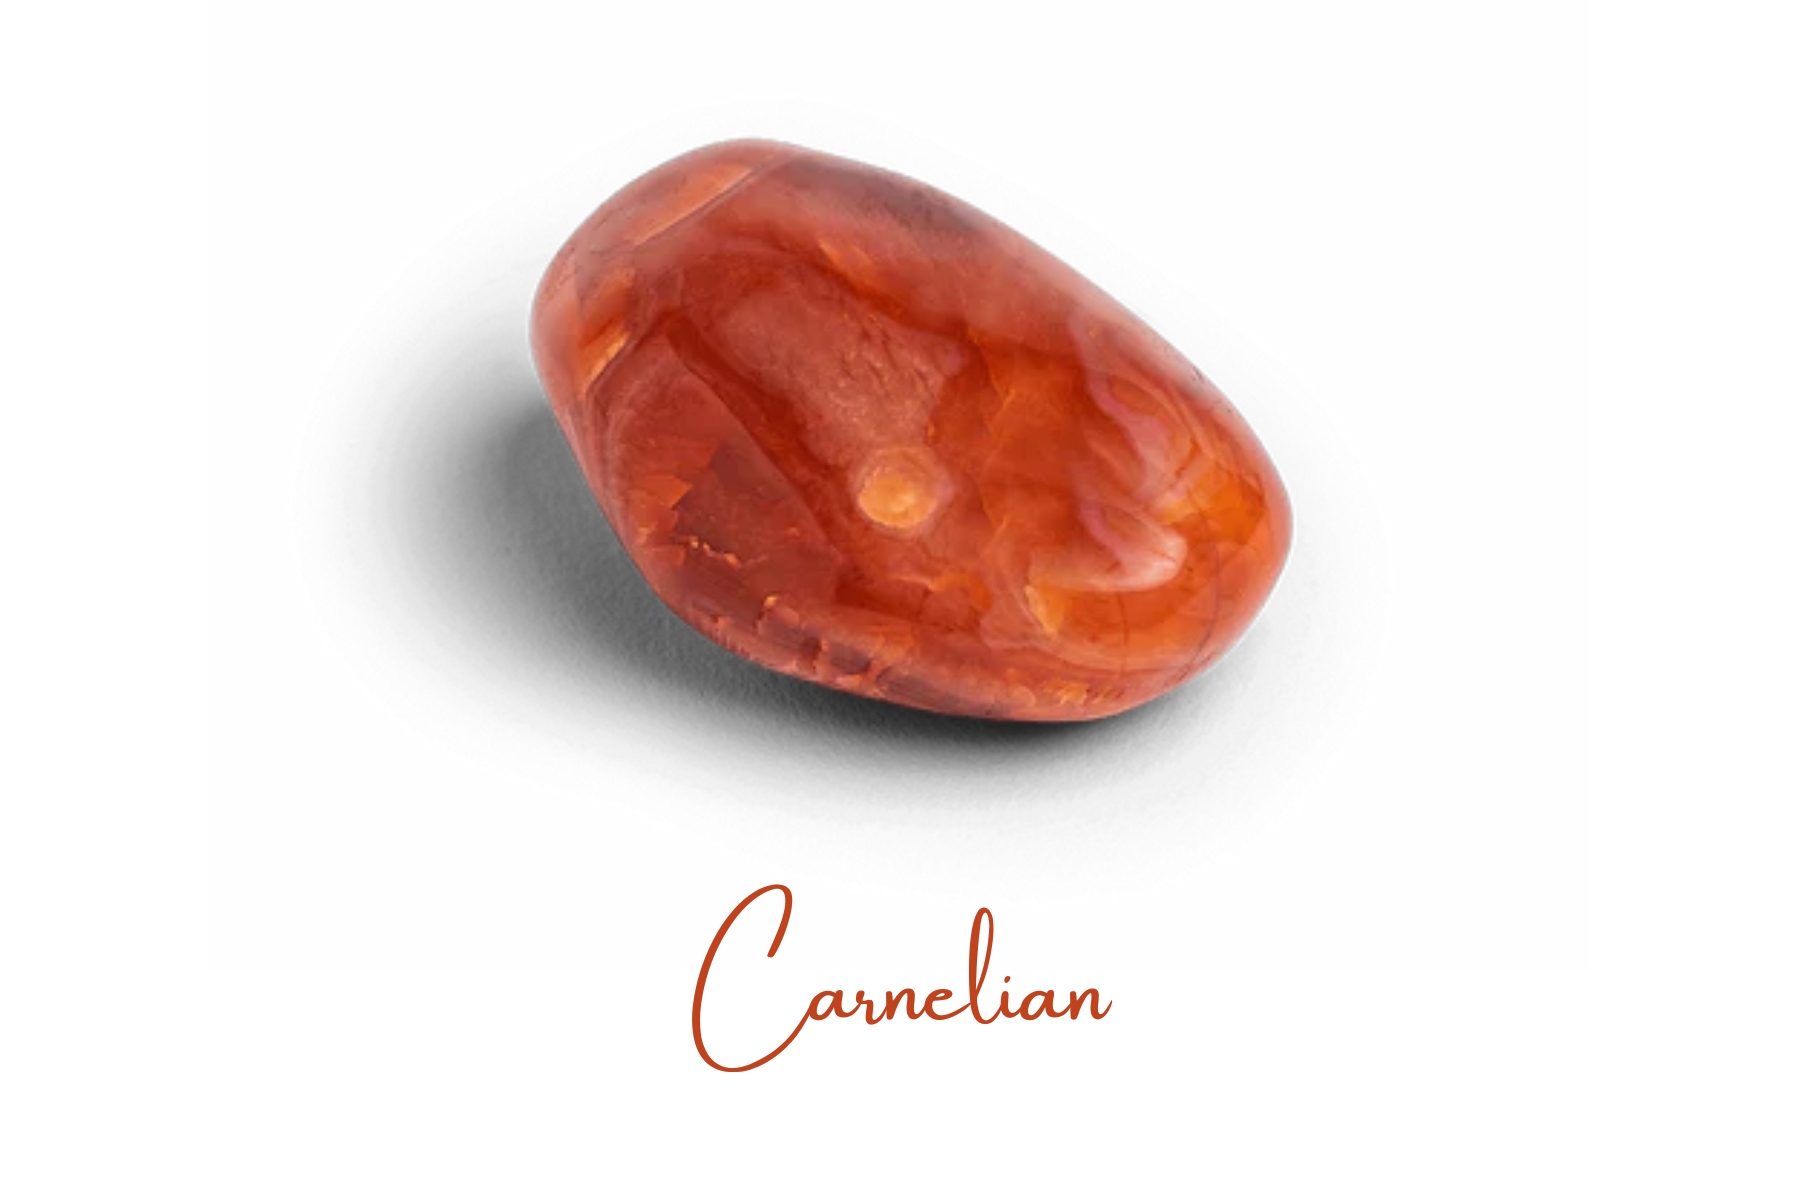 Rock-formed orange-red Carnelian stone